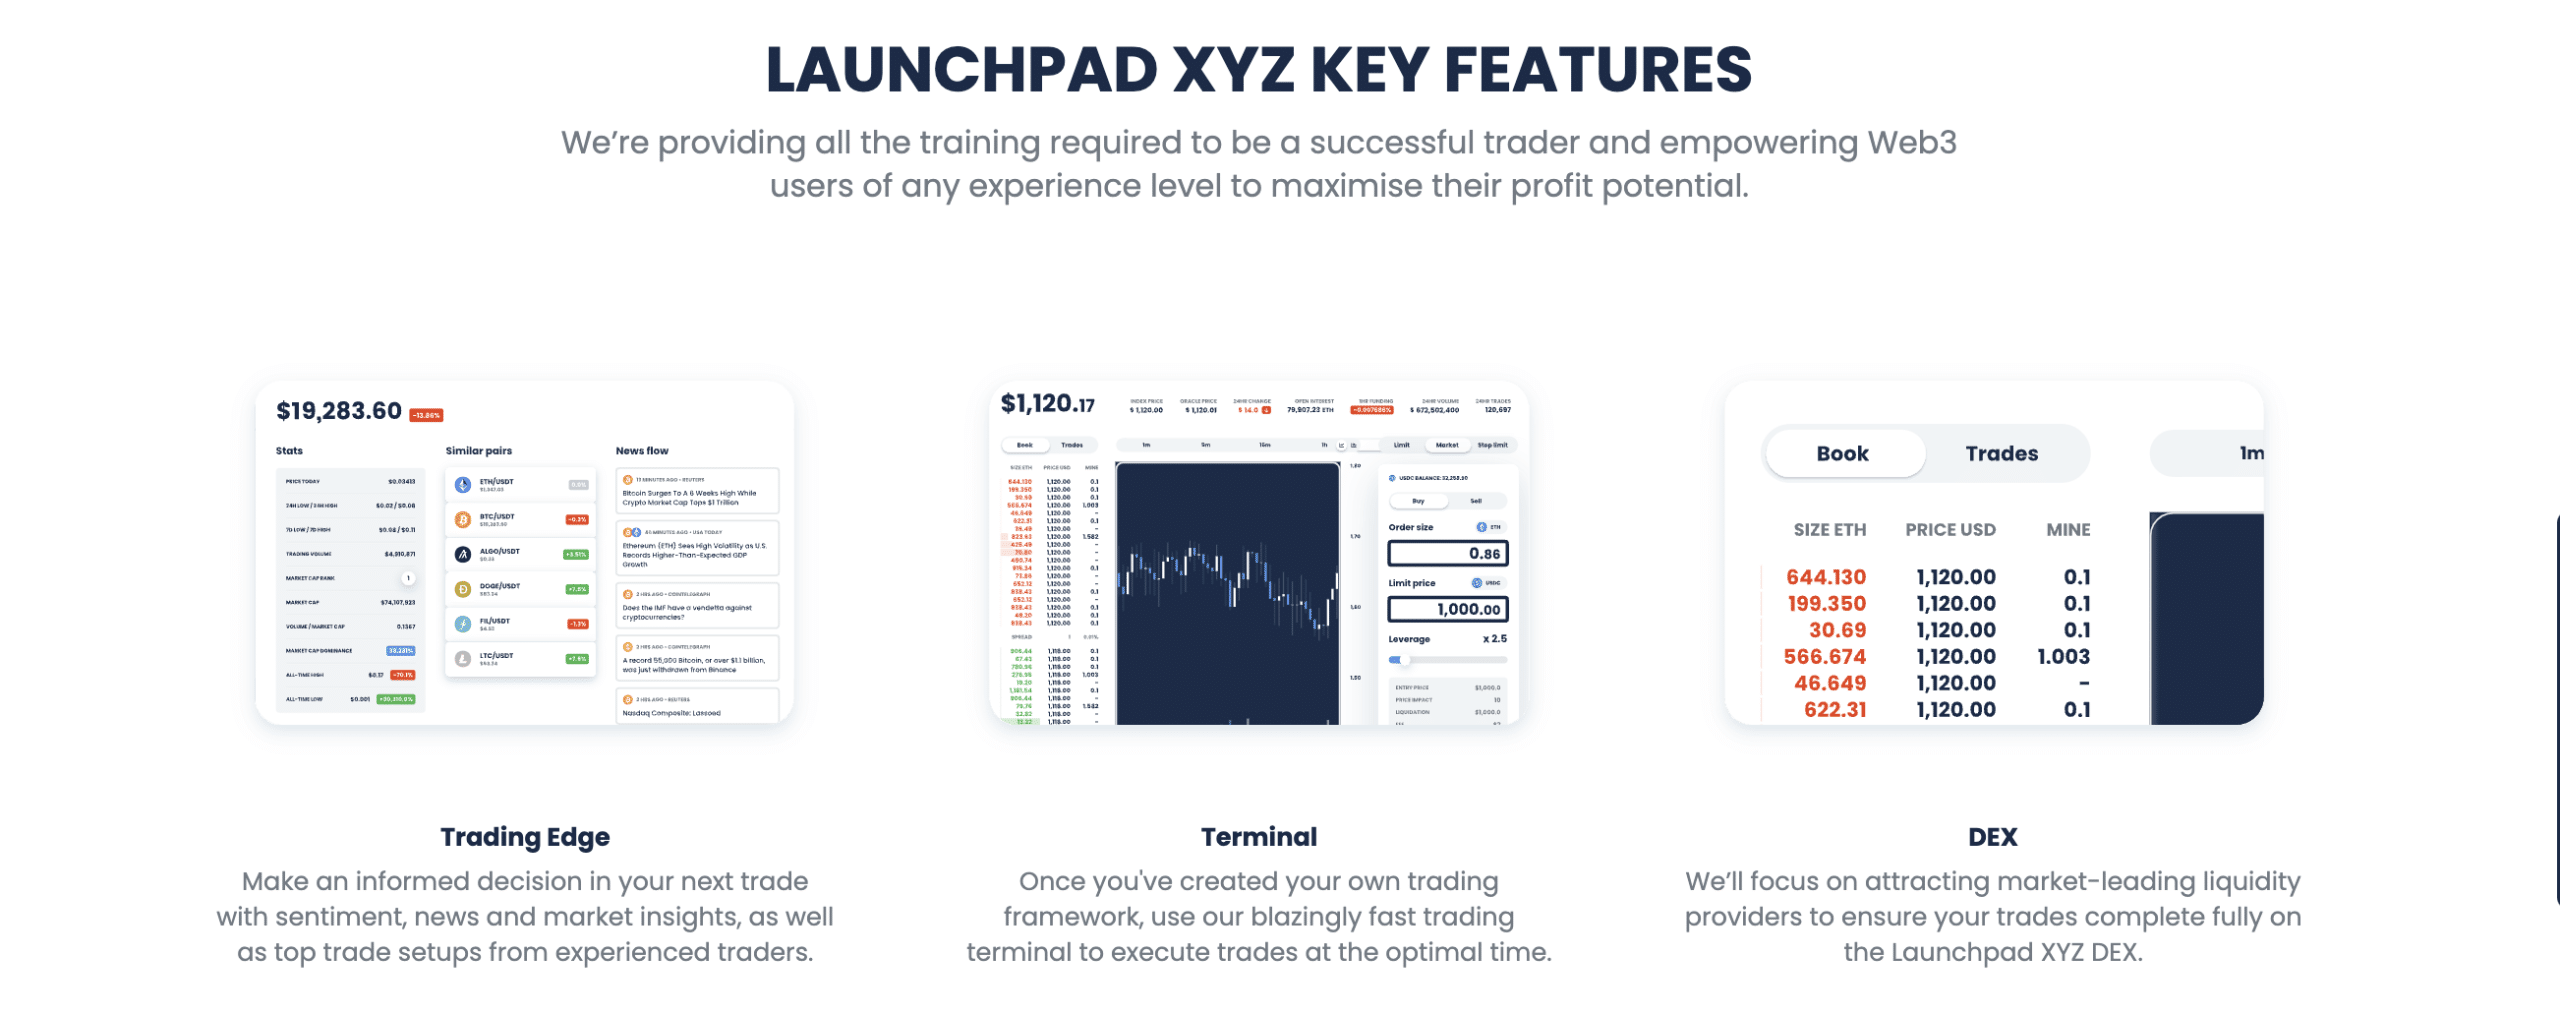 Launchpad XYZ caratteristiche e vantaggi